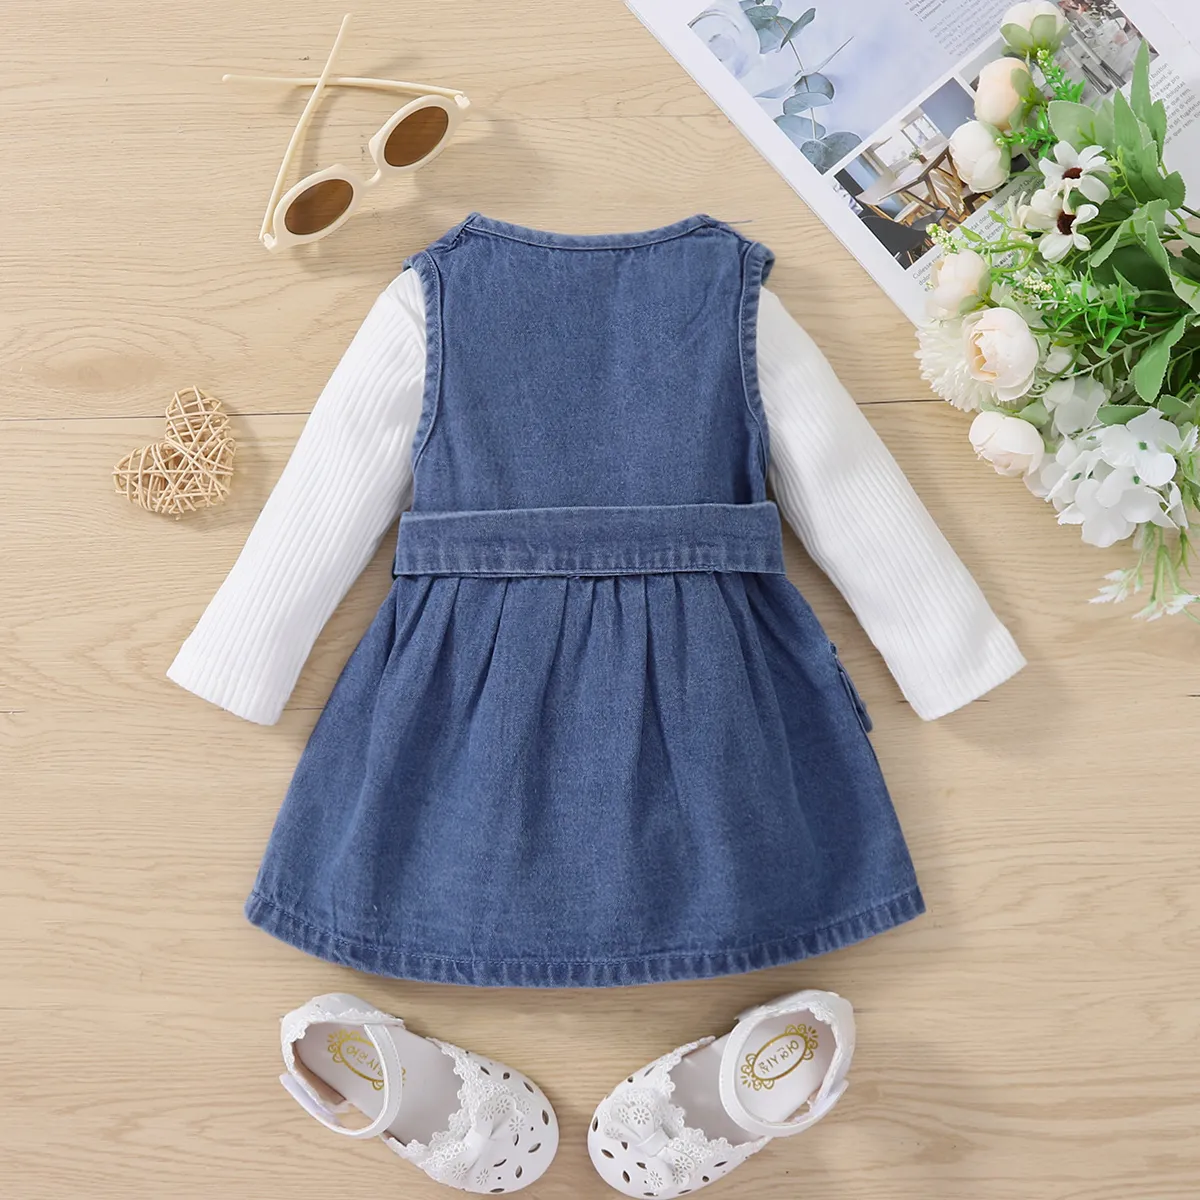 قطعتان من ملابس الأطفال الرضع 95٪ من القطن المحبوك بأكمام طويلة وحزام مزدوج الصدر من قماش الدنيم أزرق big image 1